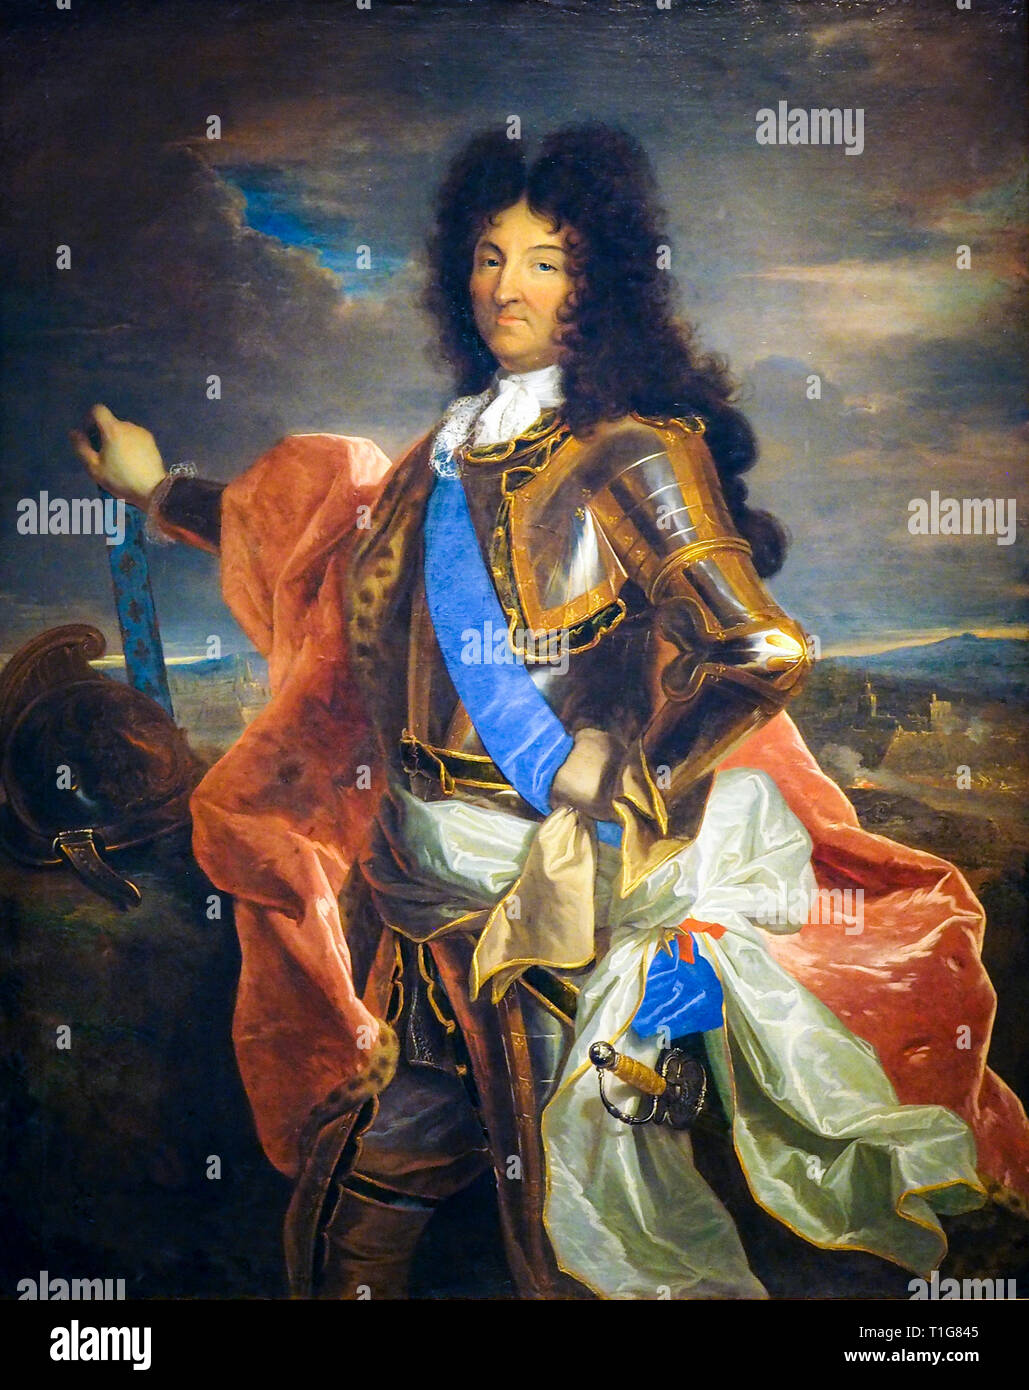 König Ludwig XIV. von Frankreich (1638-1715), Porträt Malerei in der Rüstung zu Pferd, Hyacinthe Rigaud, C. 1701 Stockfoto